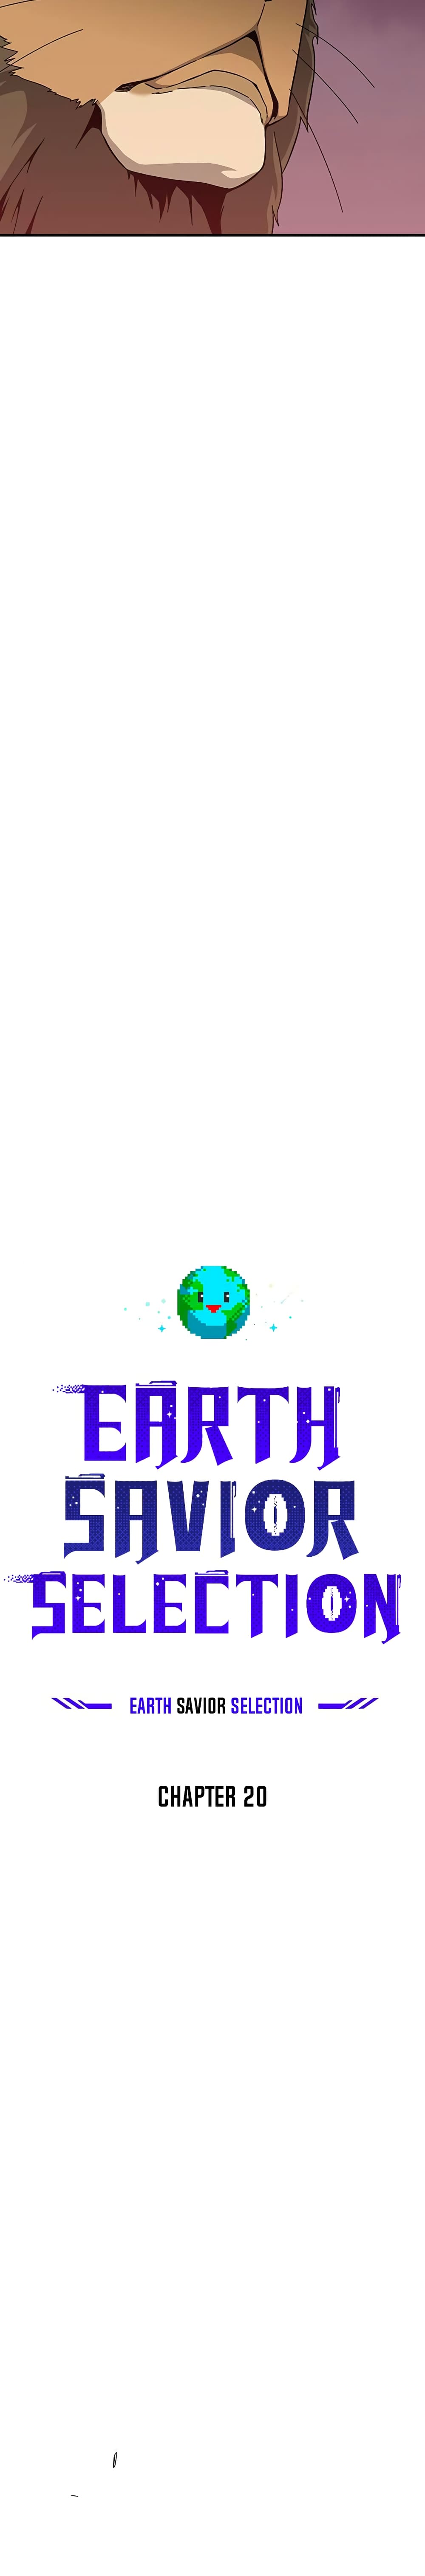 The Earth Savior Selection 20-20